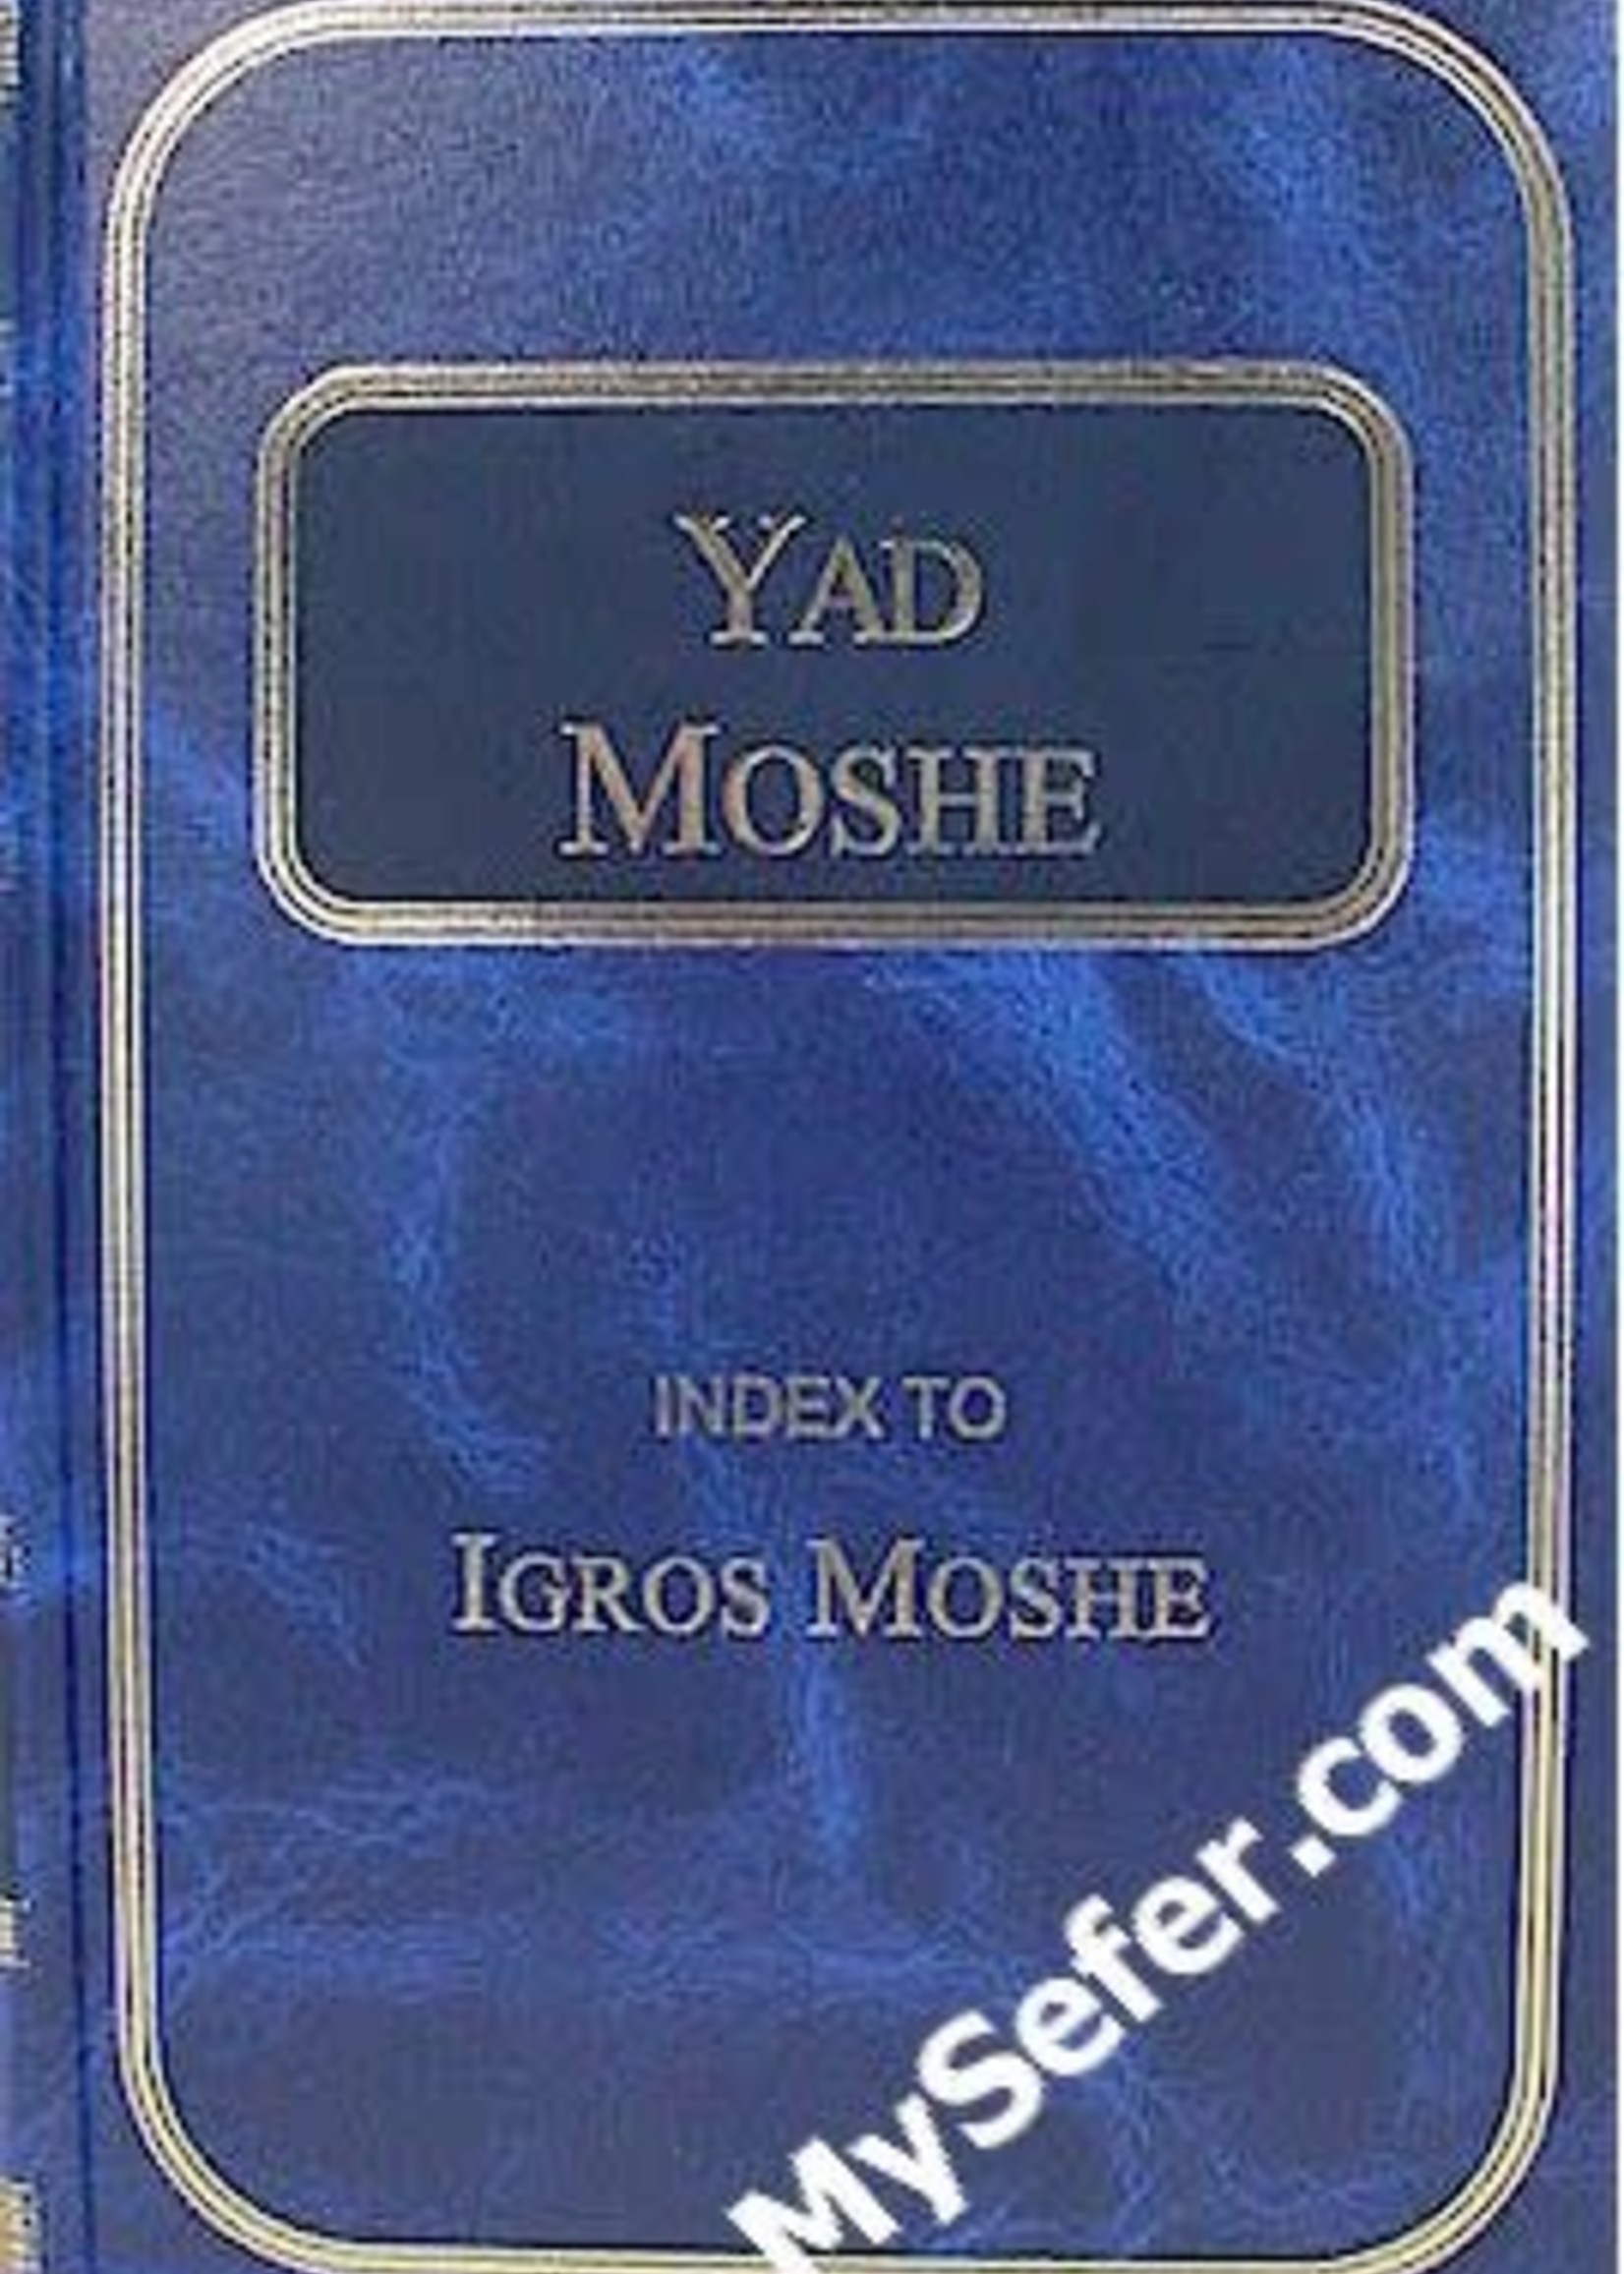 Yad Moshe - Index to Igros Moshe